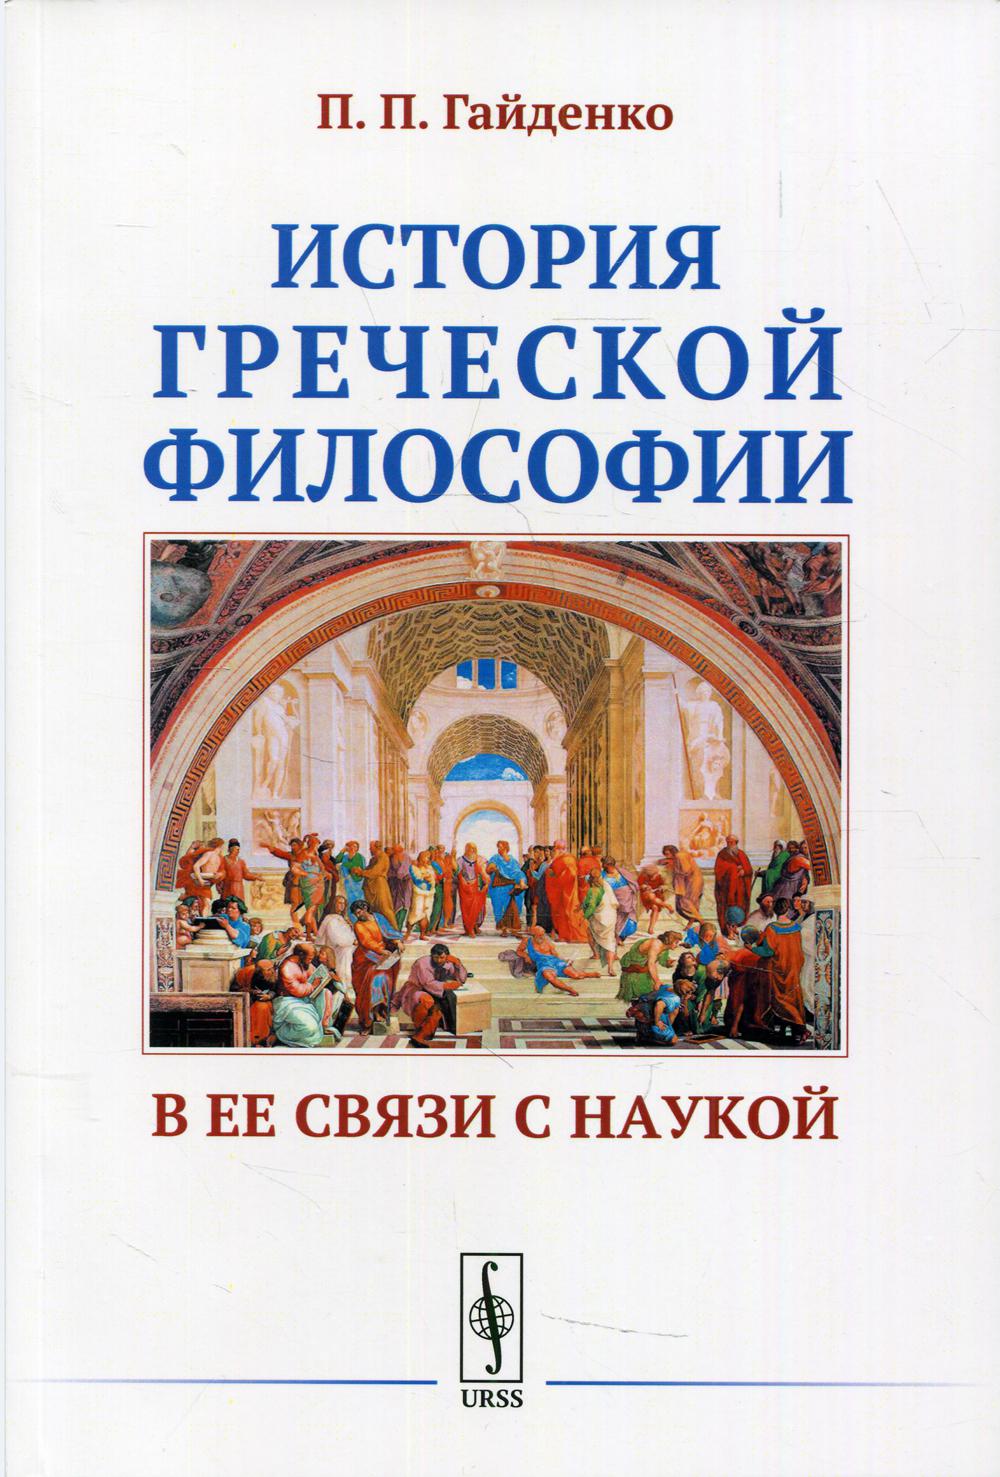 Практическое задание по теме Средневековая история Казахстана